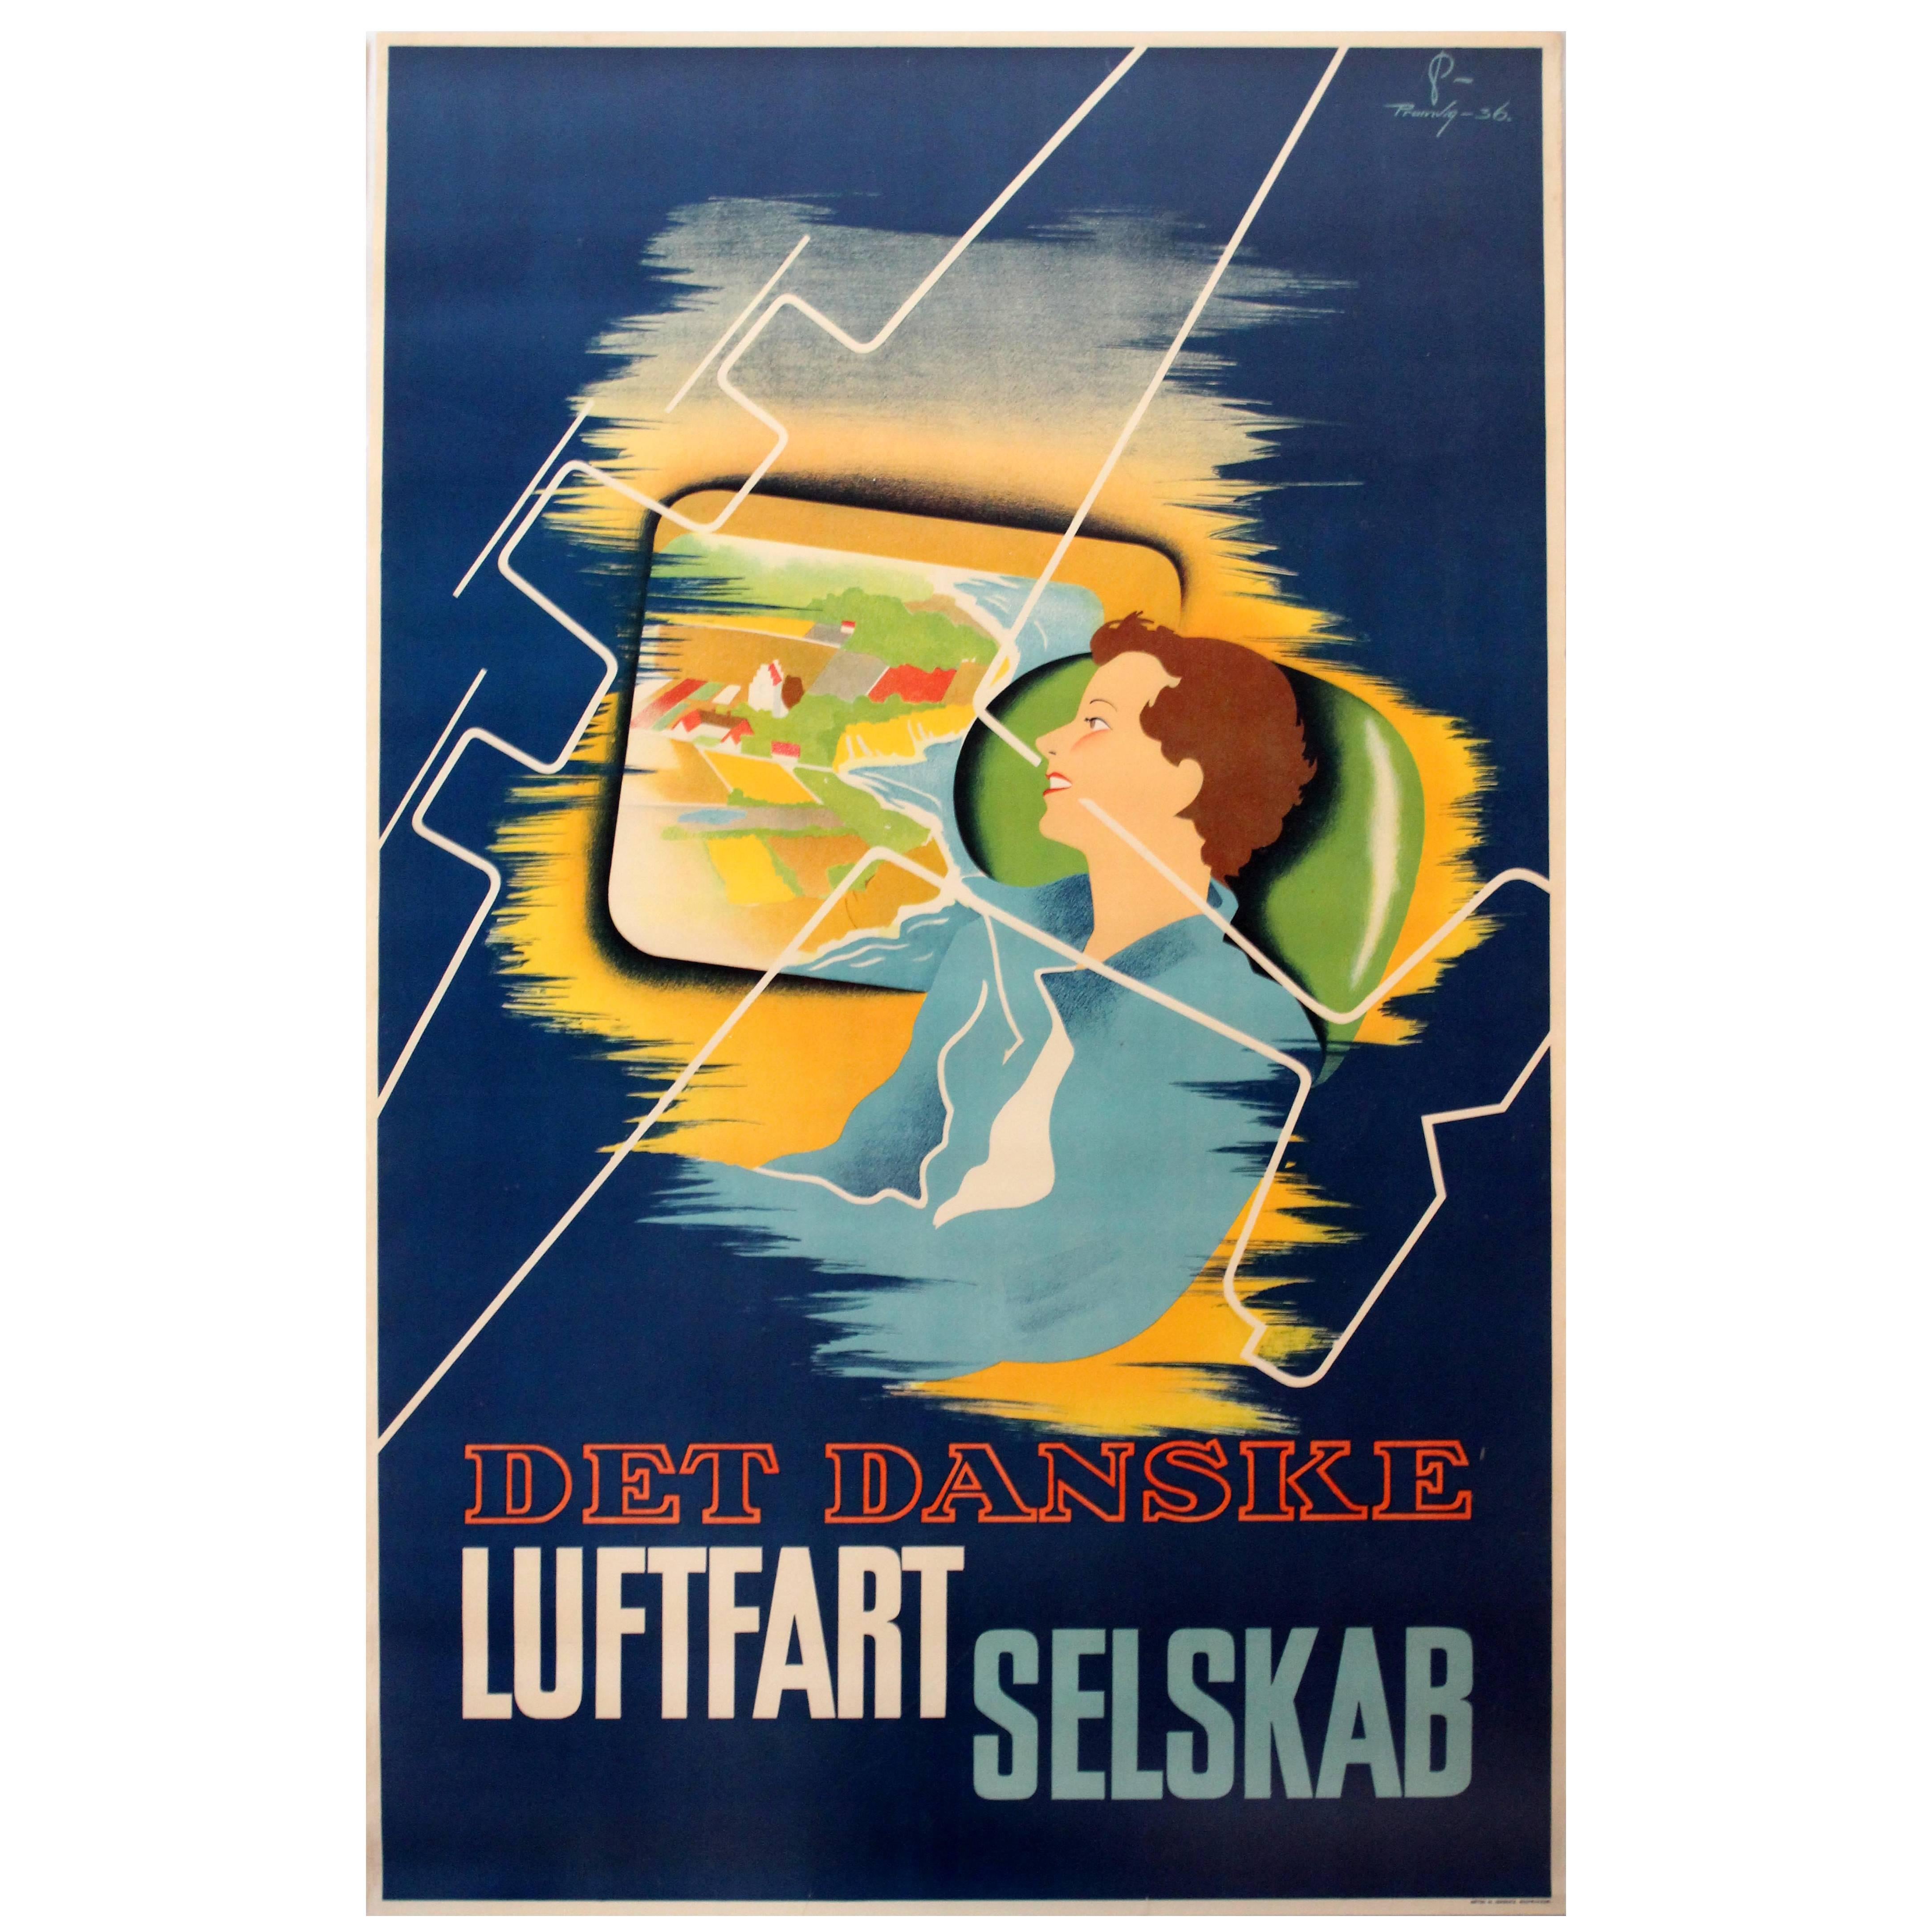 Original 1936 Danish Airlines Advertising Poster, Det Danske Luftfartselskab For Sale